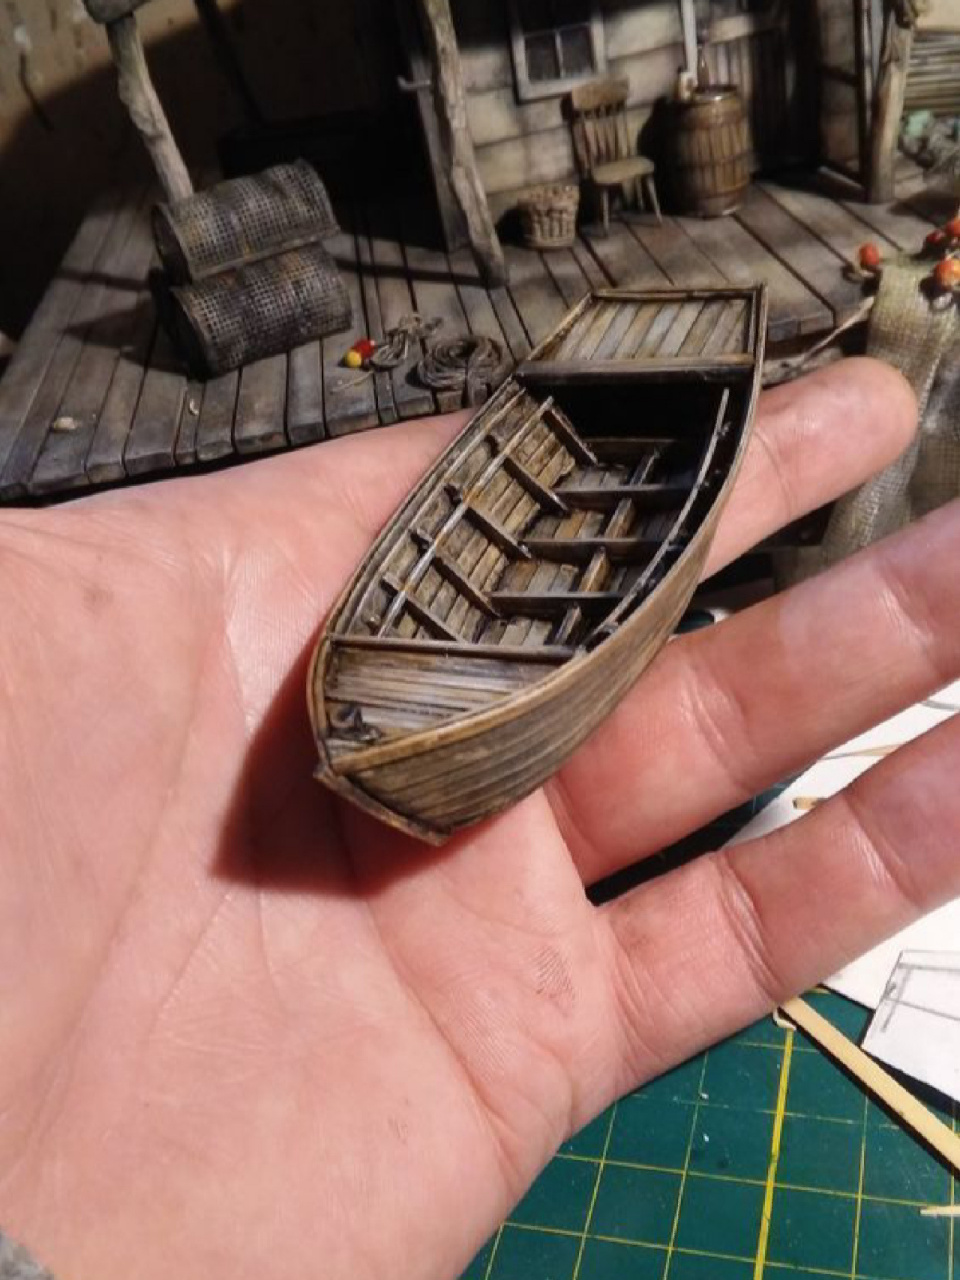 小型木船的制造步骤图片